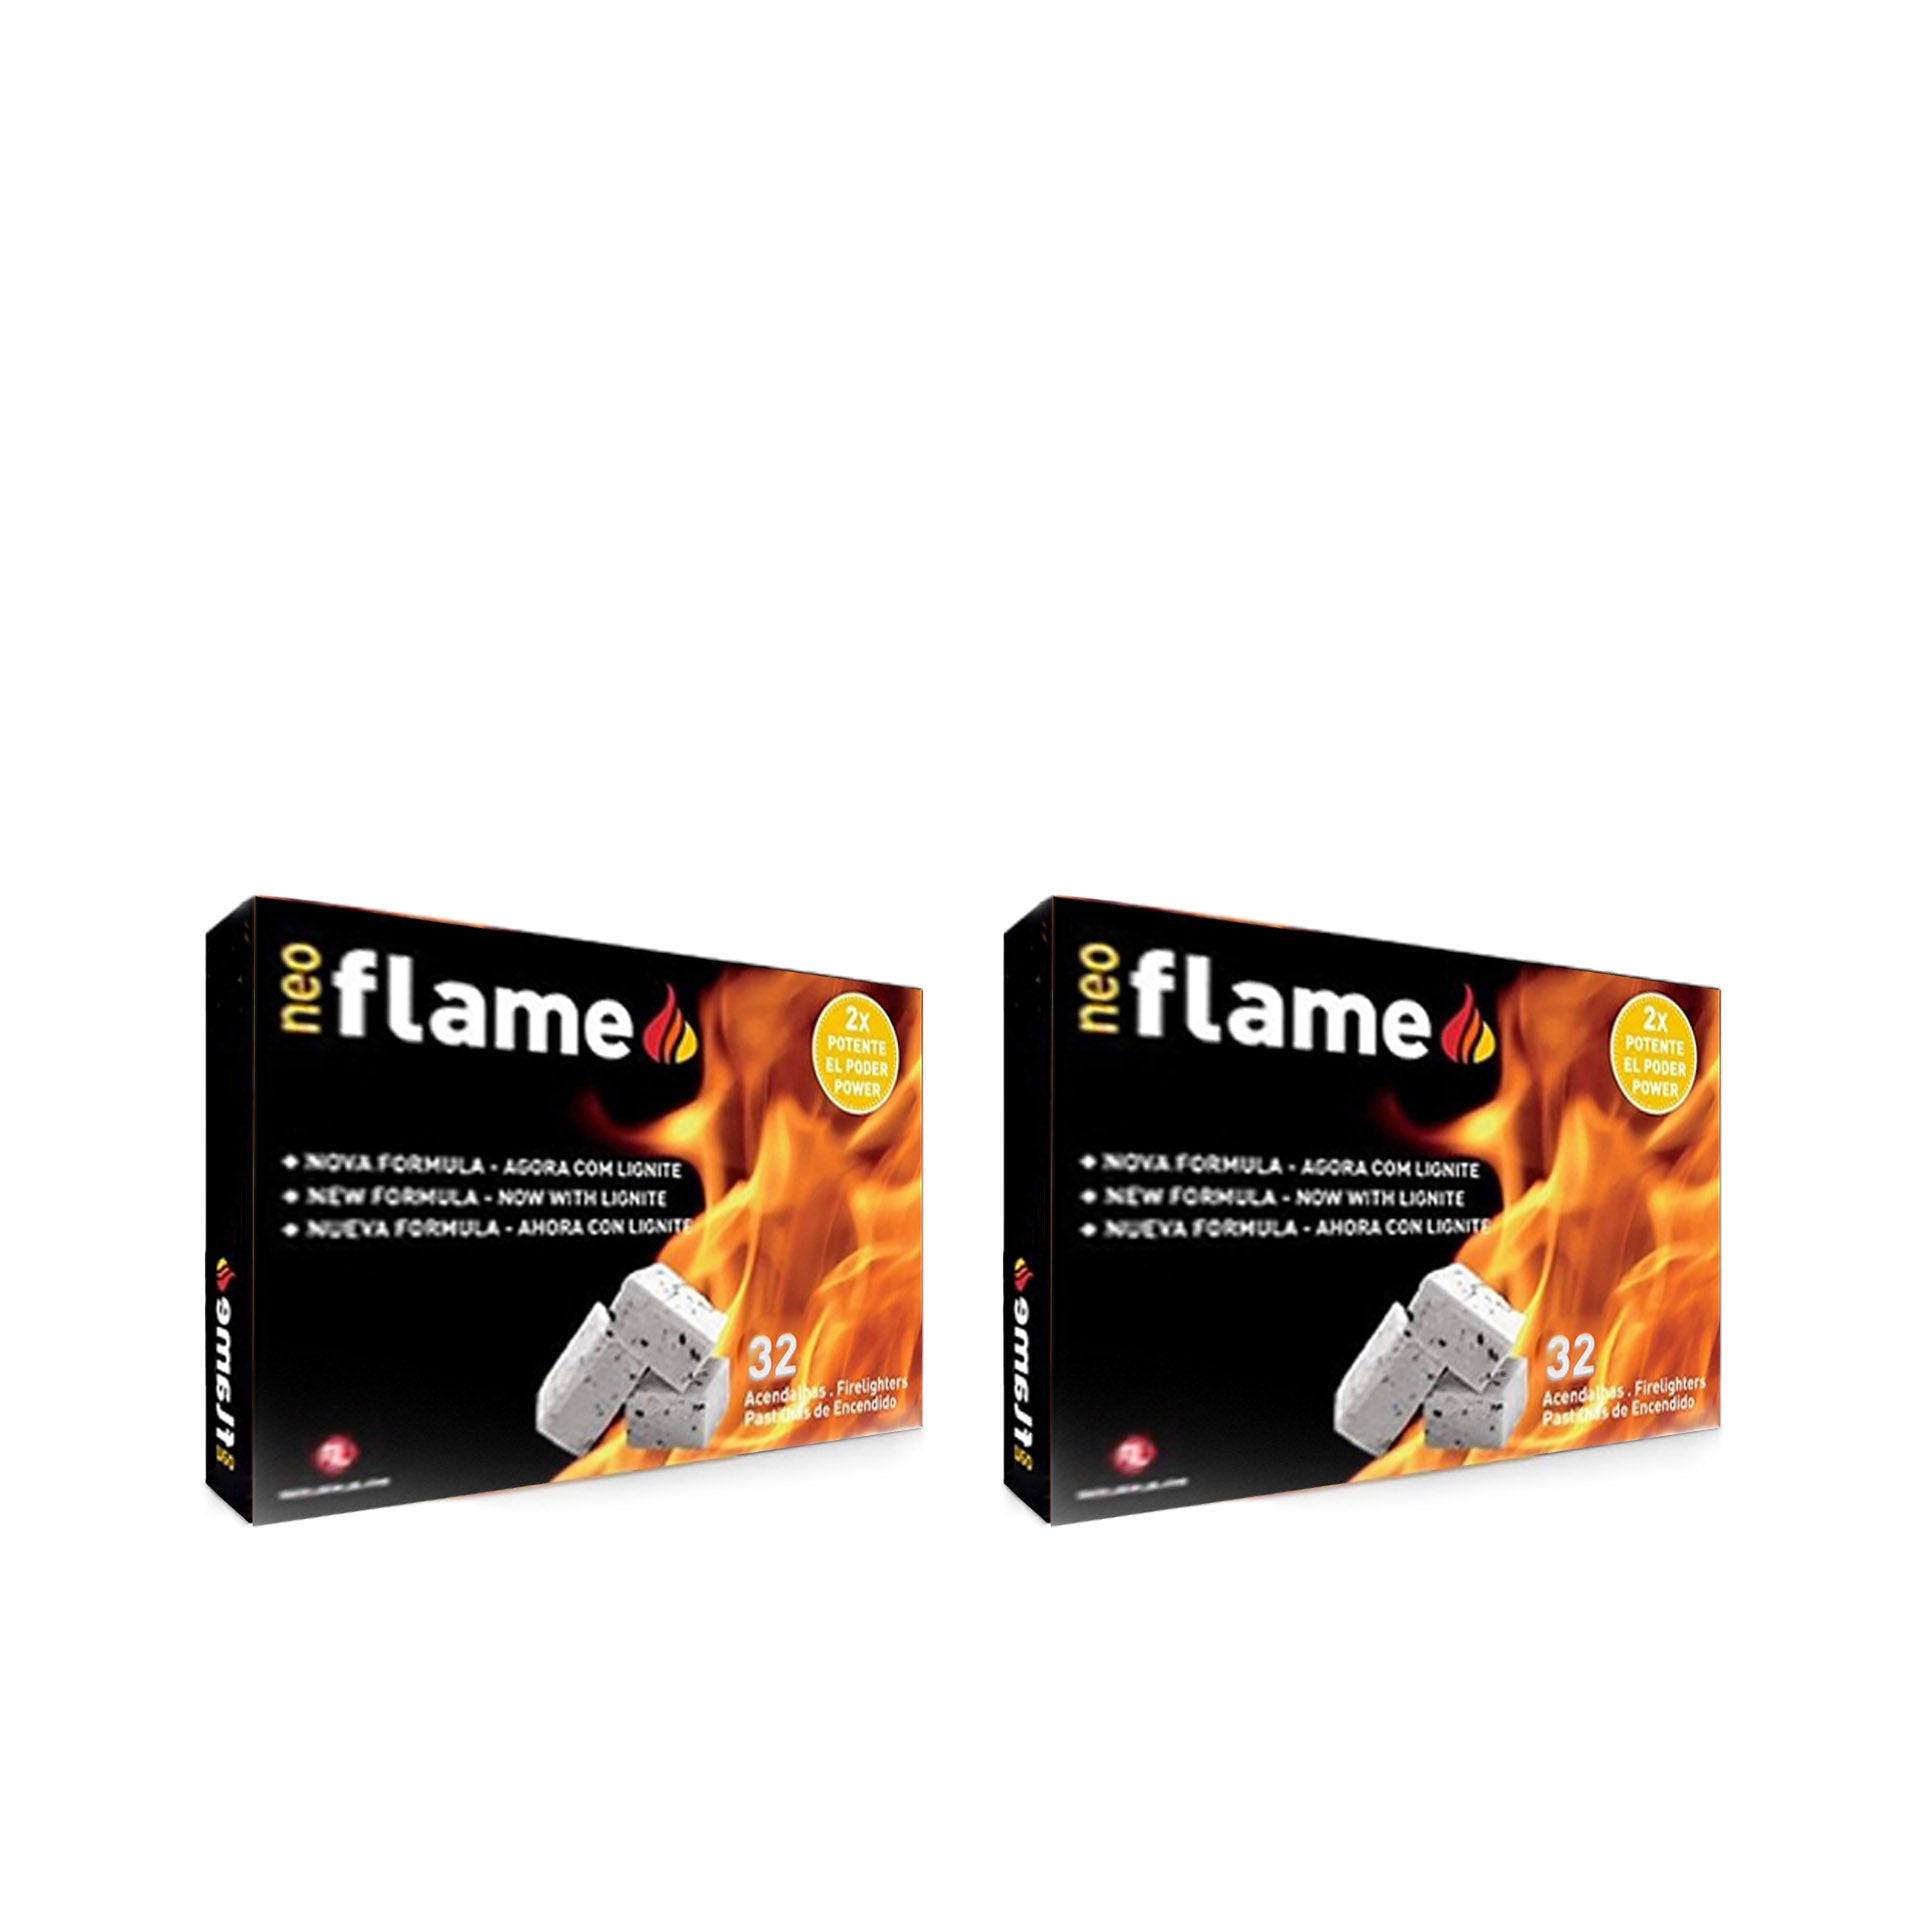 Flamefast Acendalha Branca Neoflame 32 cubos - Pack 2 x 32 cubos